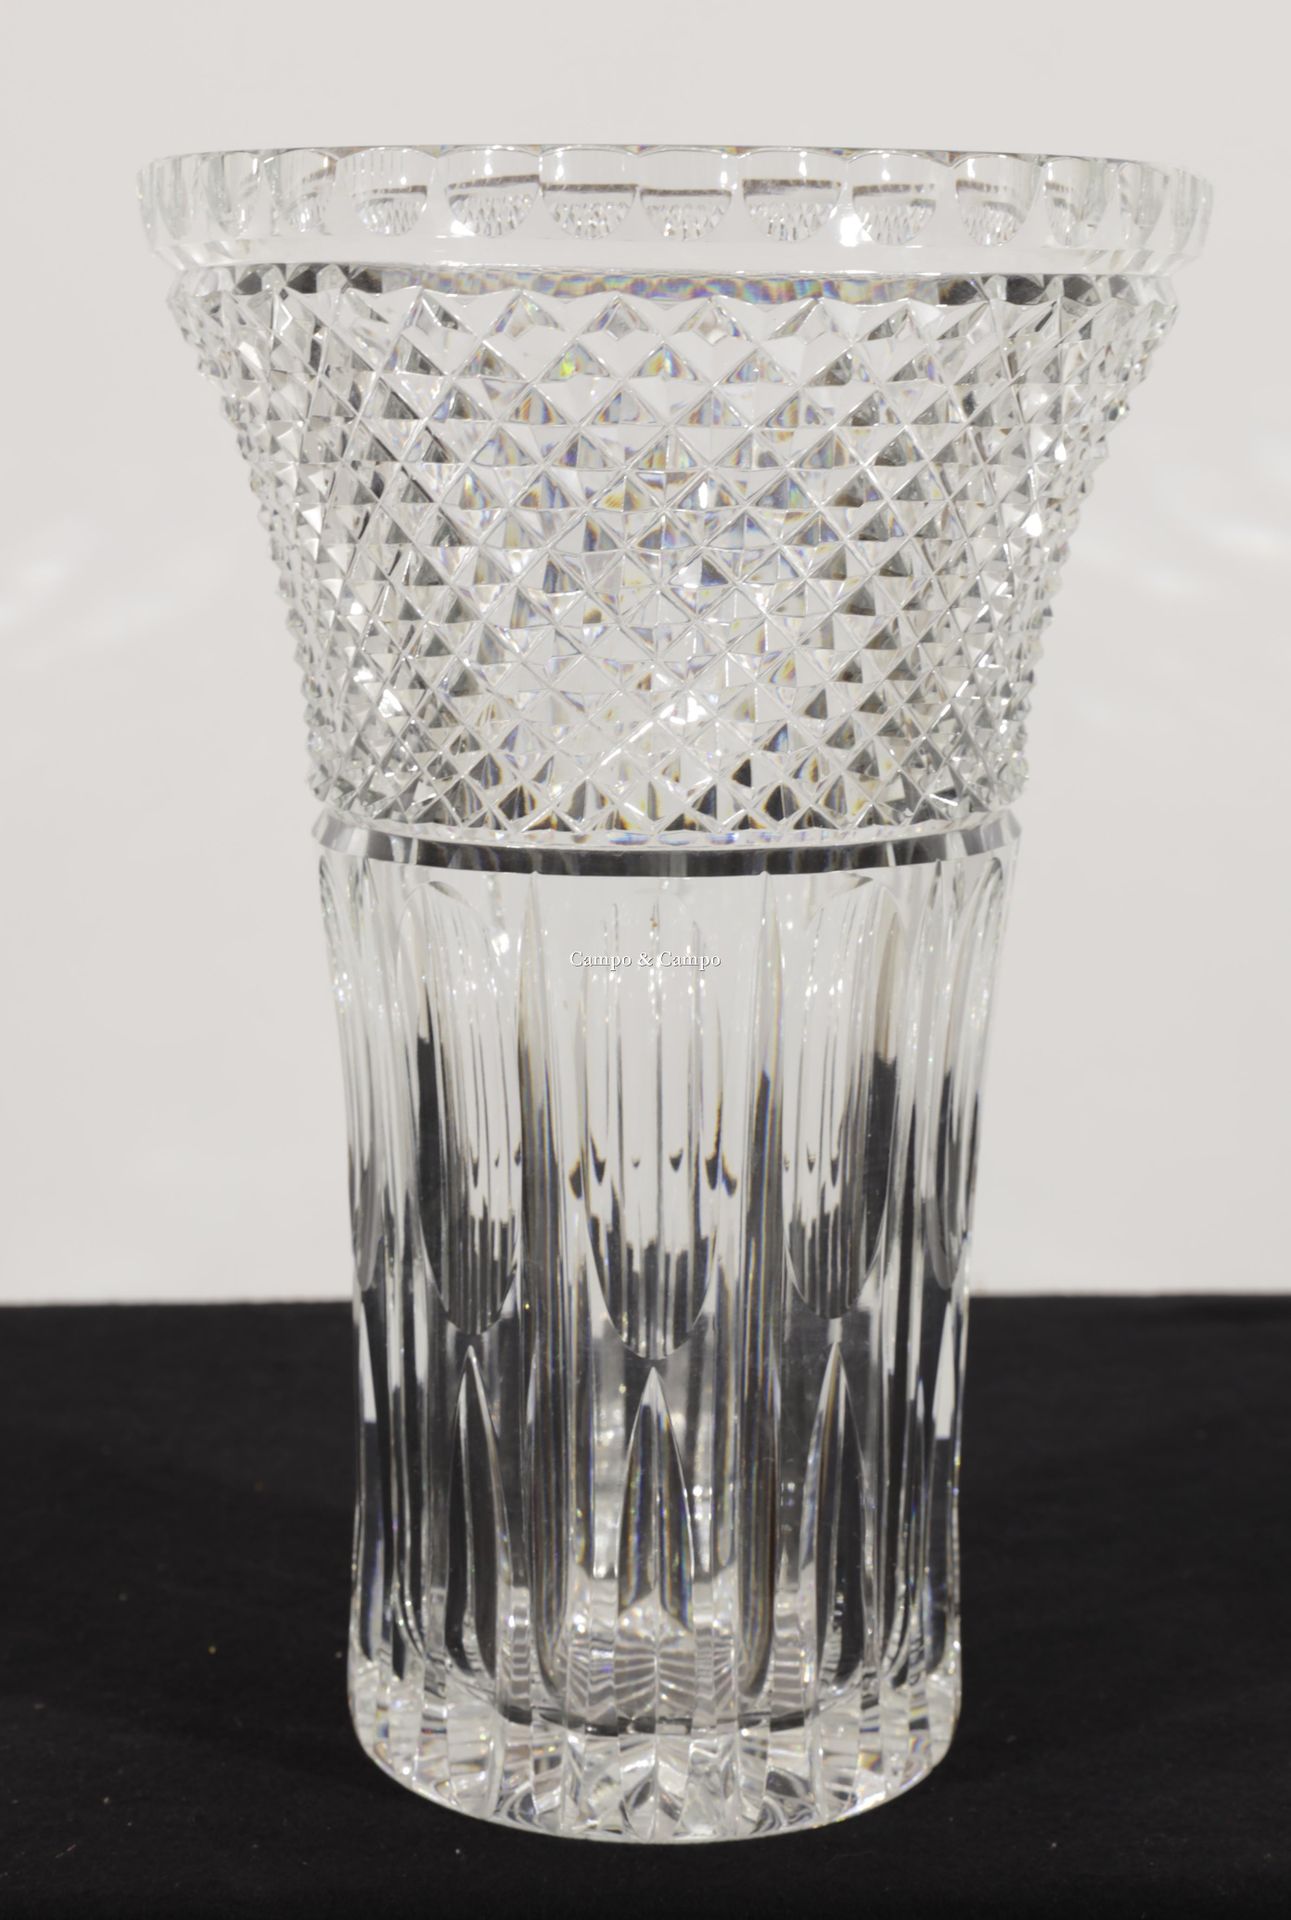 VARIA Vase aus klarem Kristall, möglicherweise böhmisches Kristall
Vaas van held&hellip;